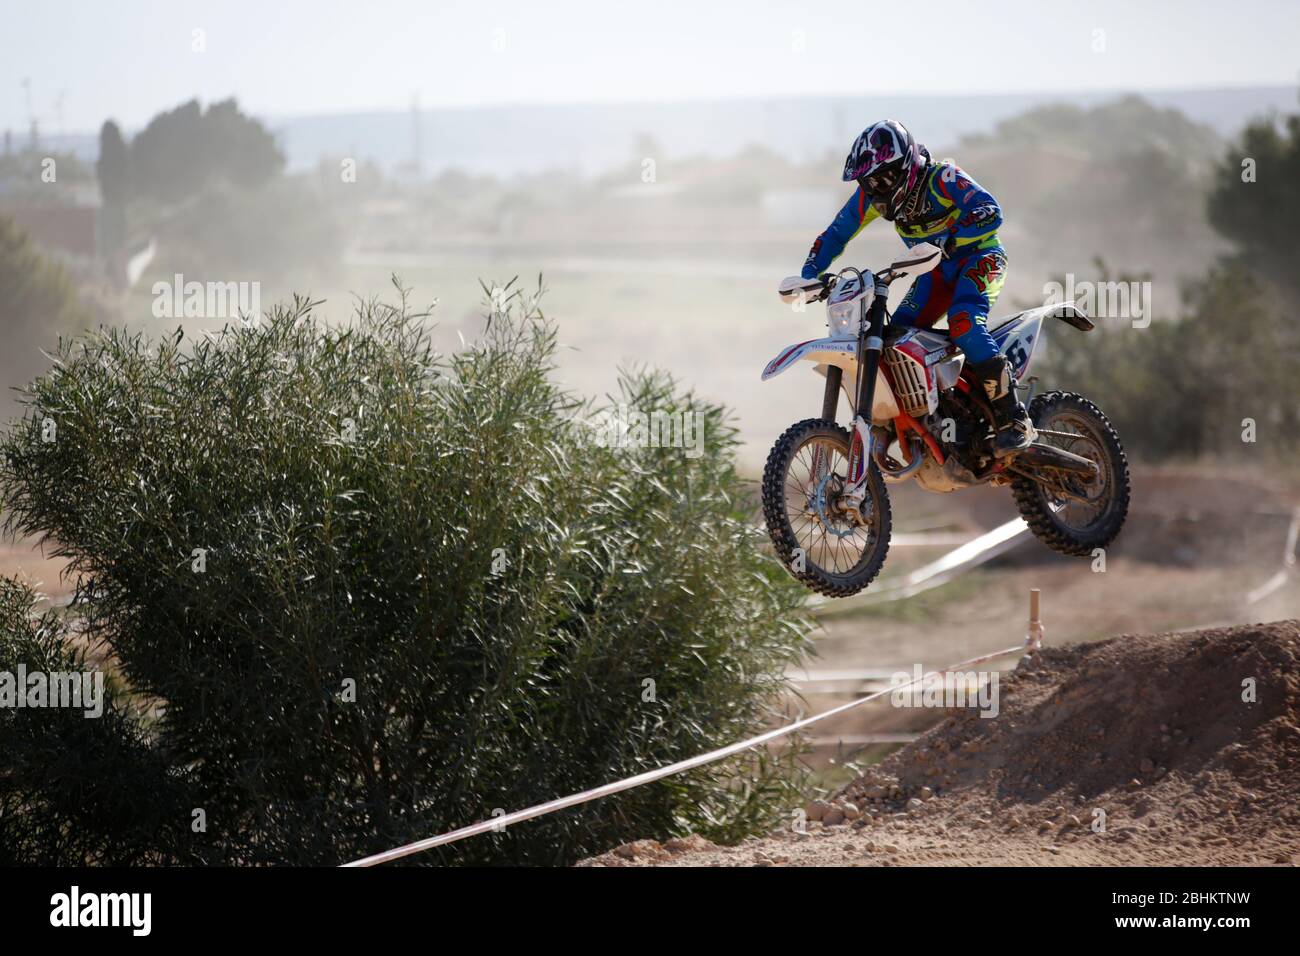 Elche, Espagne. 19 novembre 2019: Compétition Motocross dans la ville d'Elche, Espagne. Banque D'Images